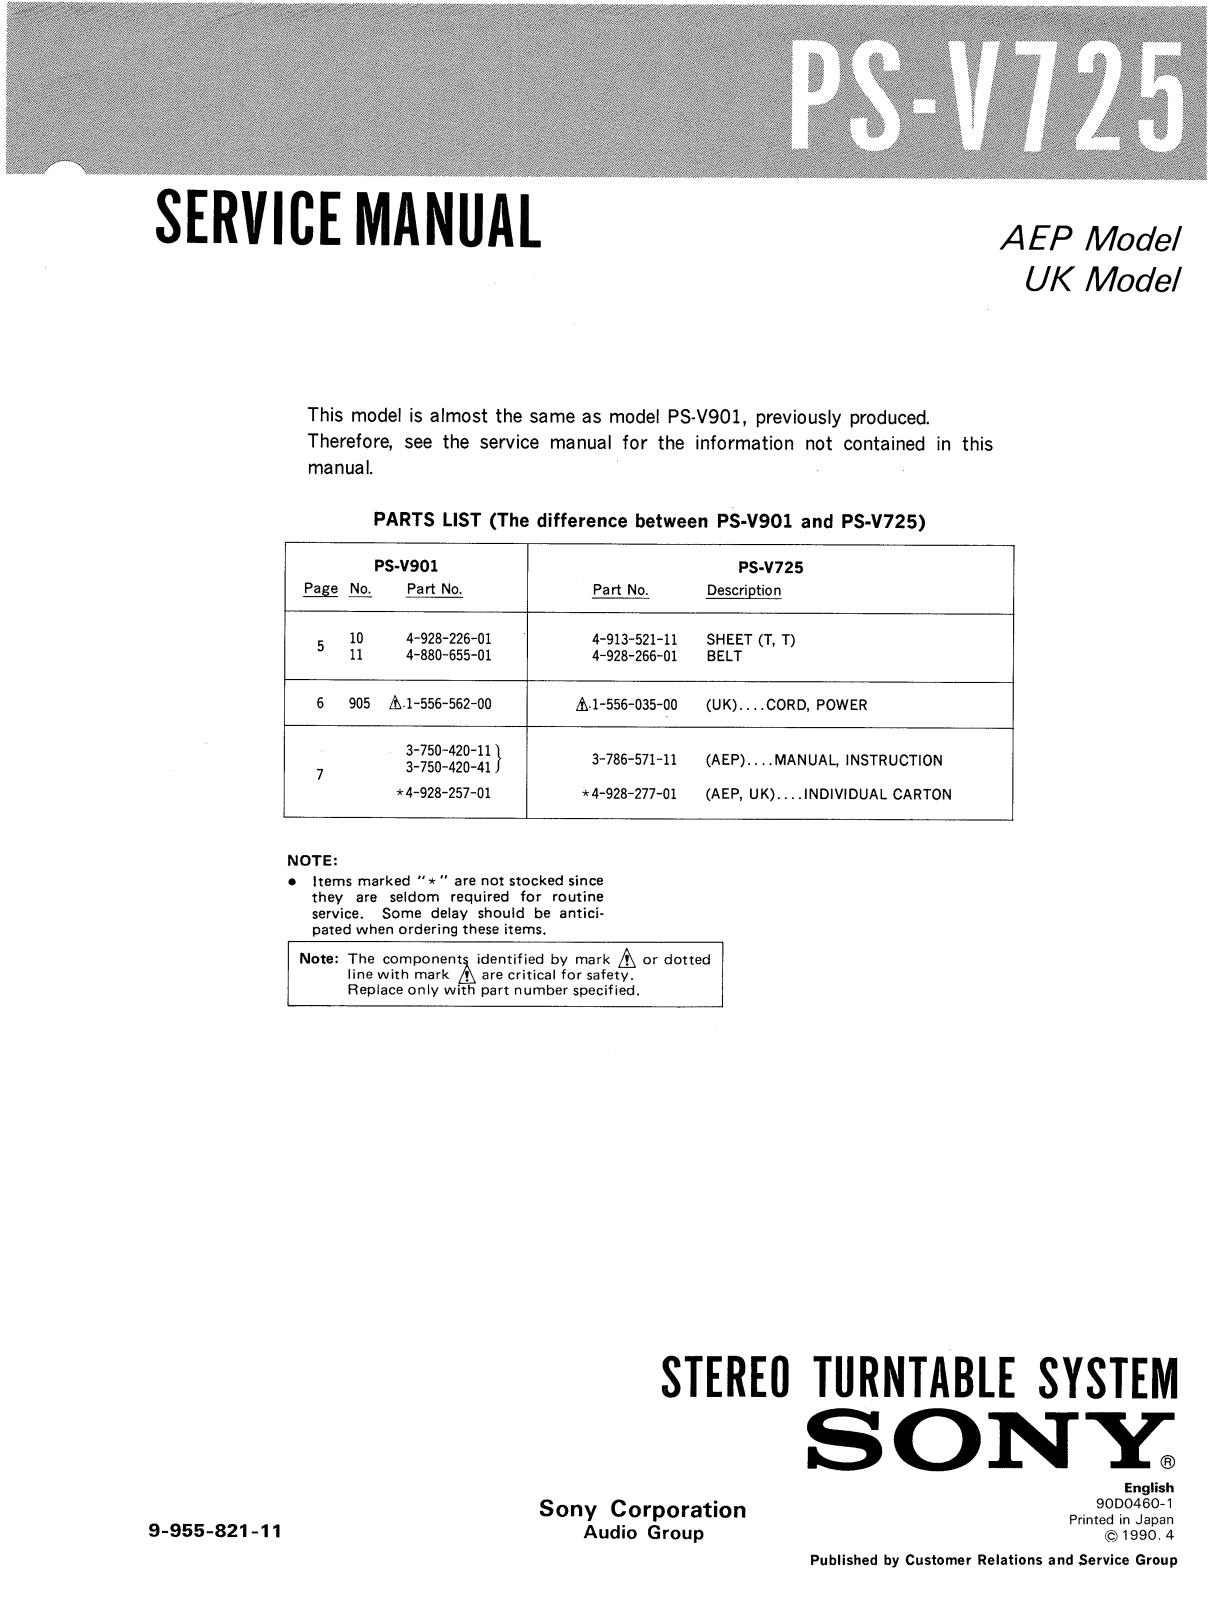 Sony PS-V725 Service Manual